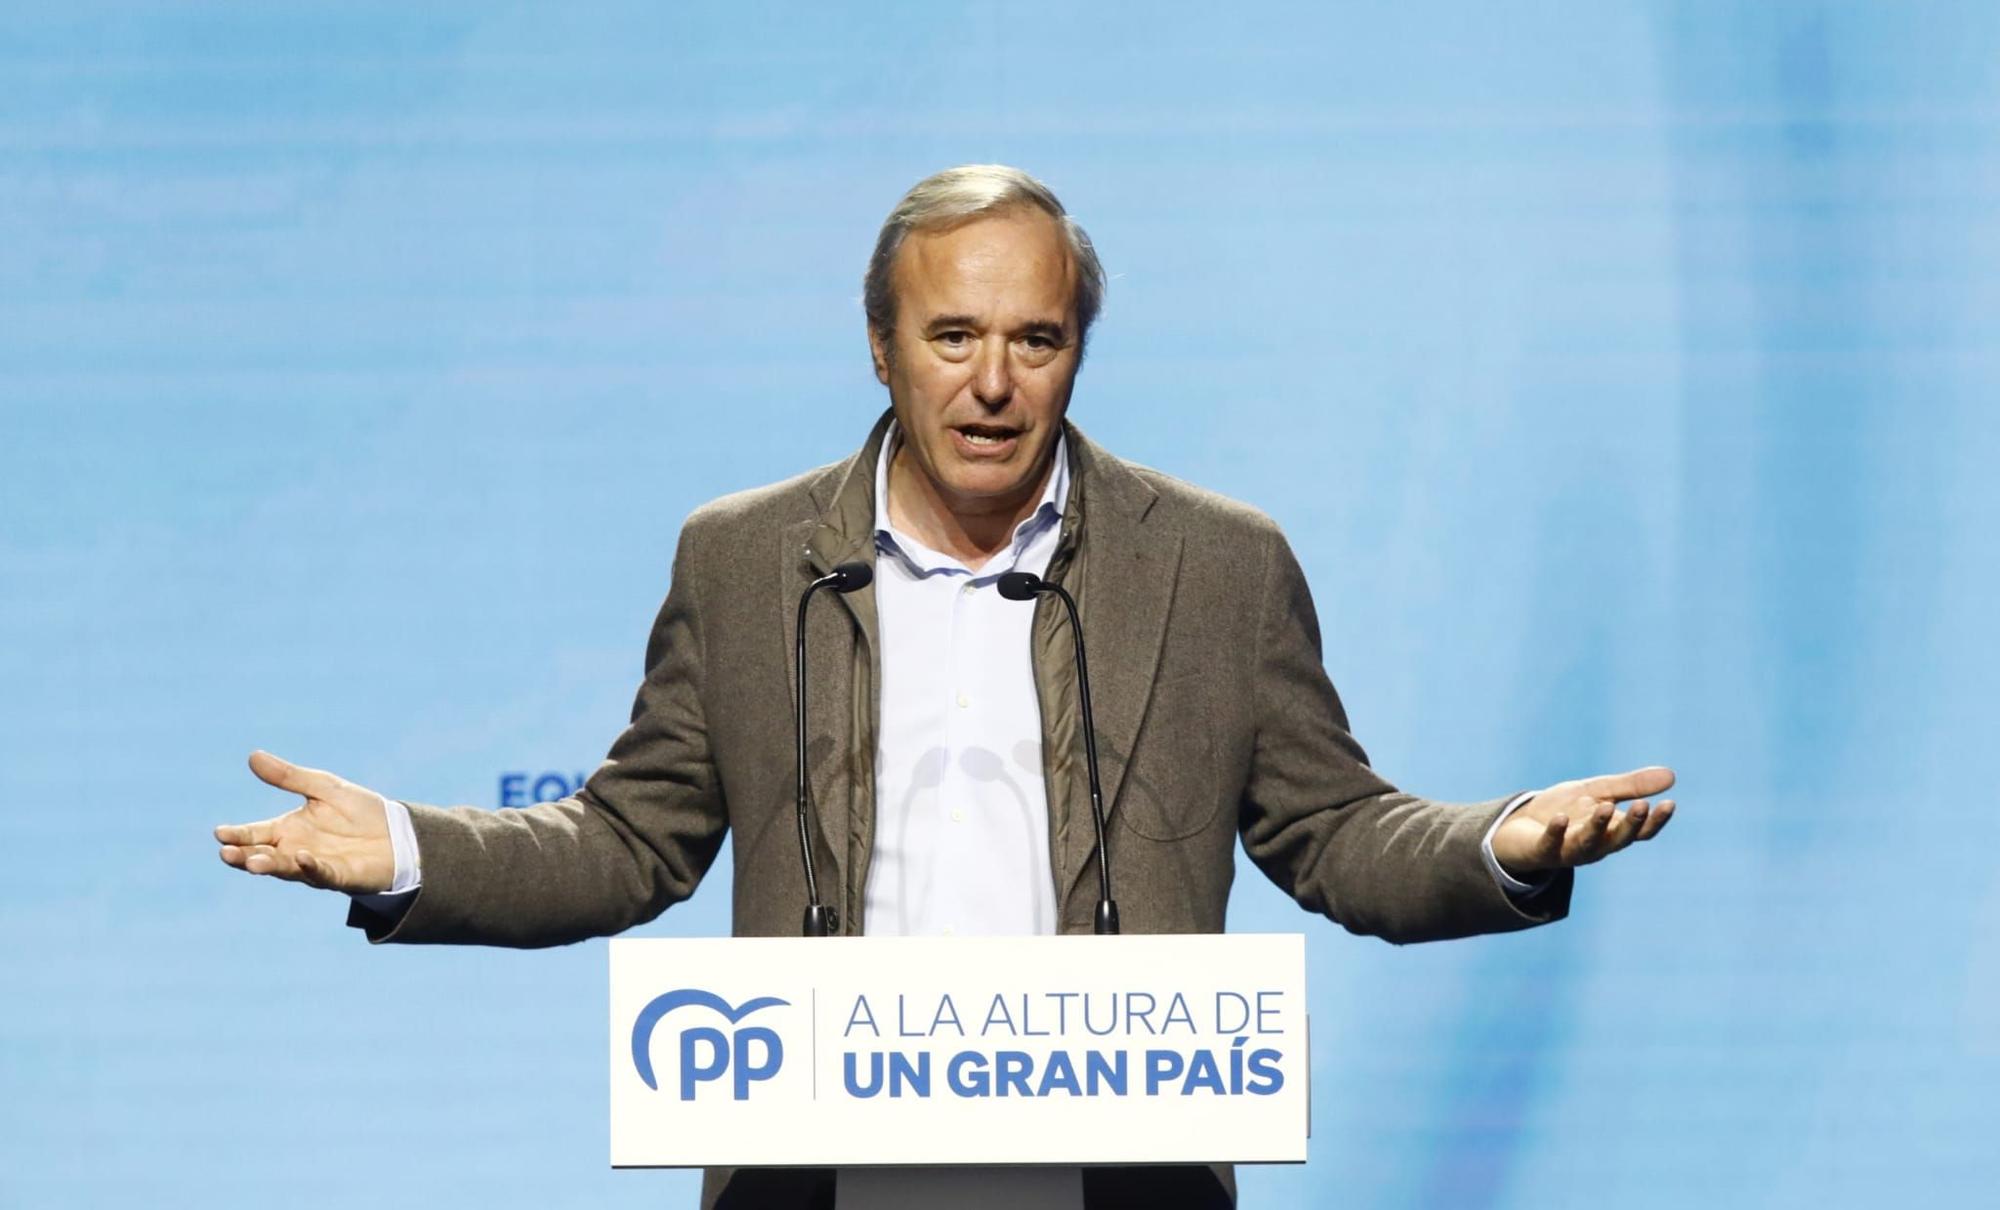 El PP presenta a sus candidatos a las autonómicas en Zaragoza